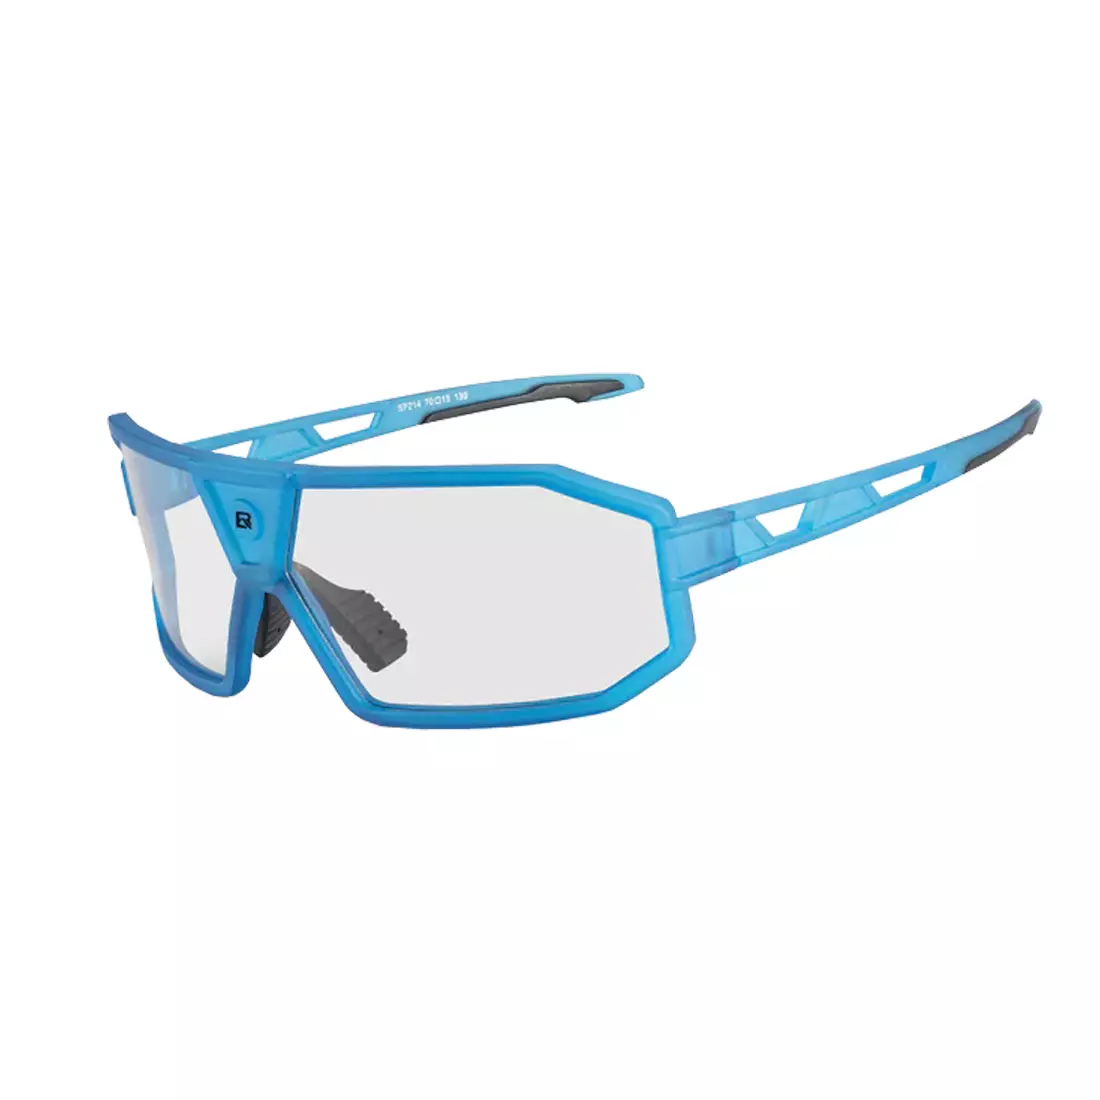 Rockbros SP214BL ochelari fotocromici pentru ciclism / sport albastru